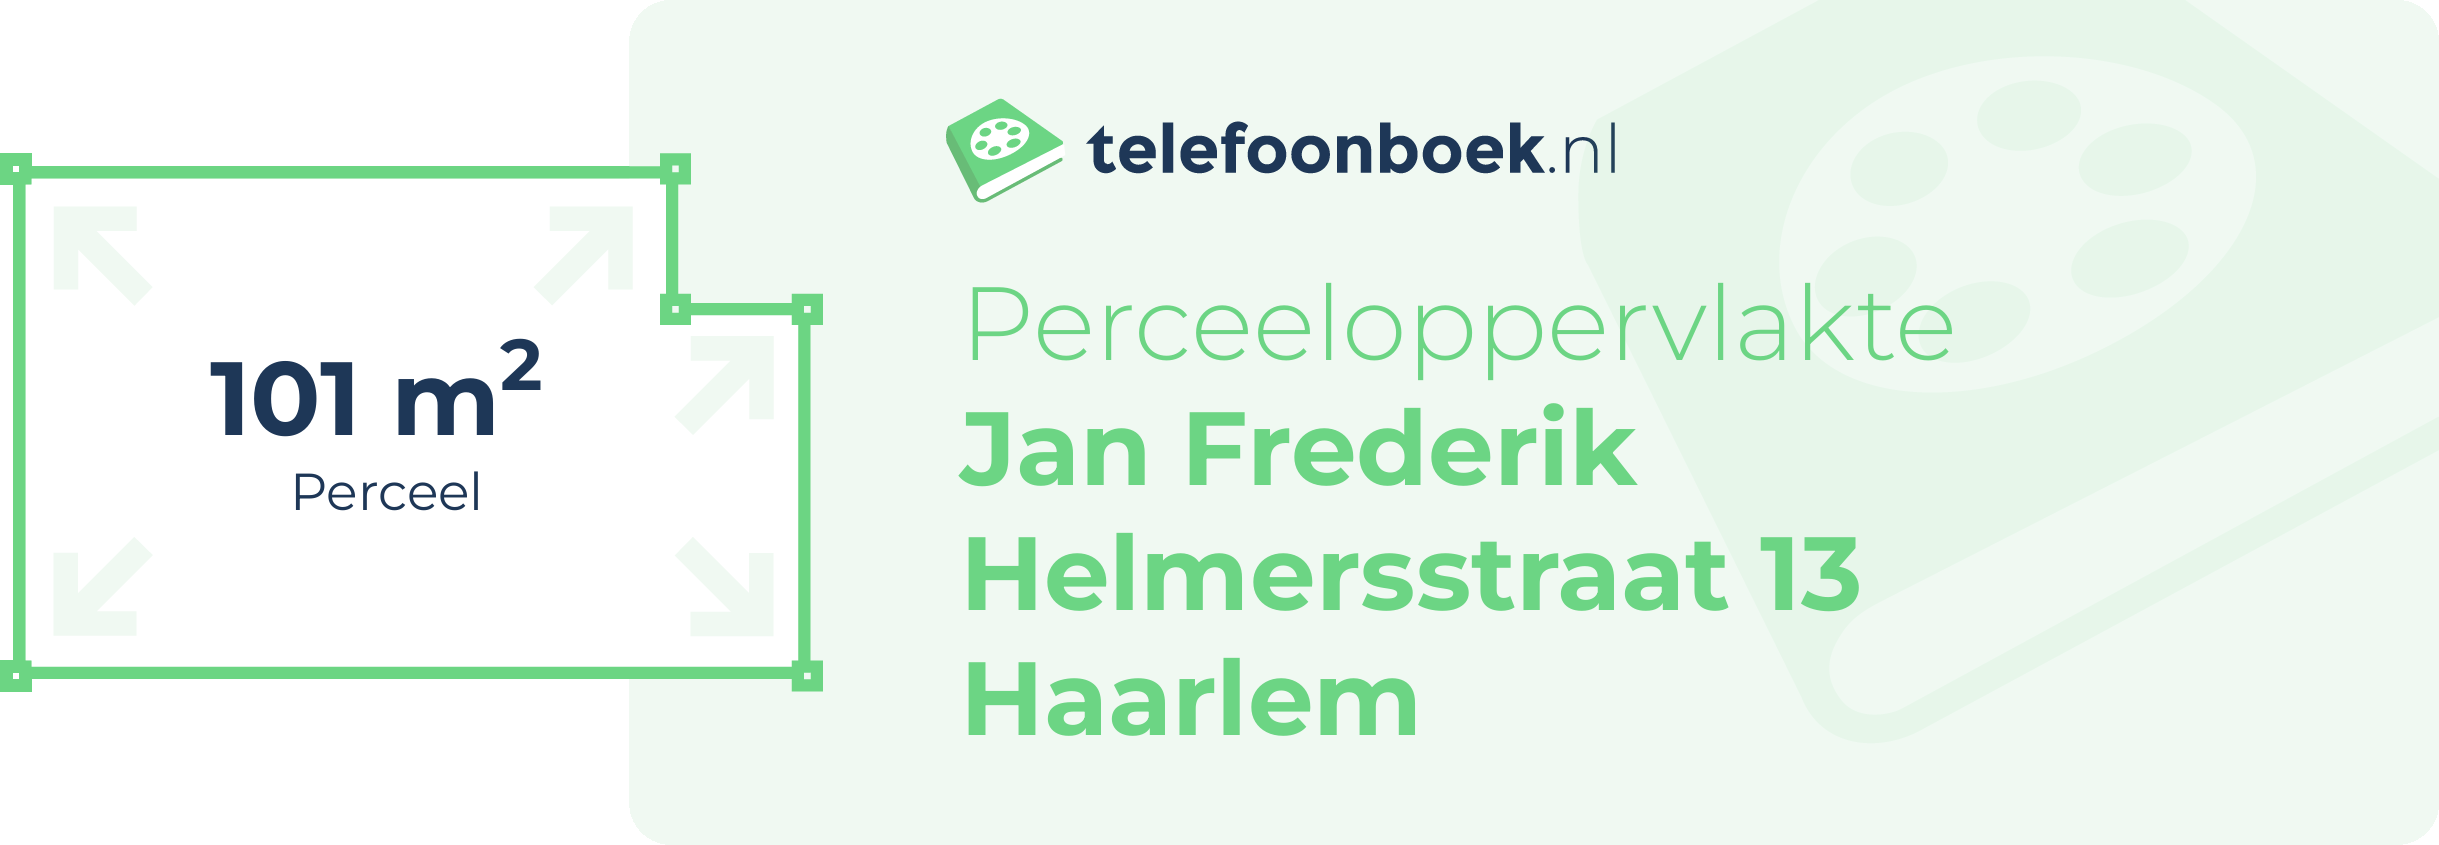 Perceeloppervlakte Jan Frederik Helmersstraat 13 Haarlem